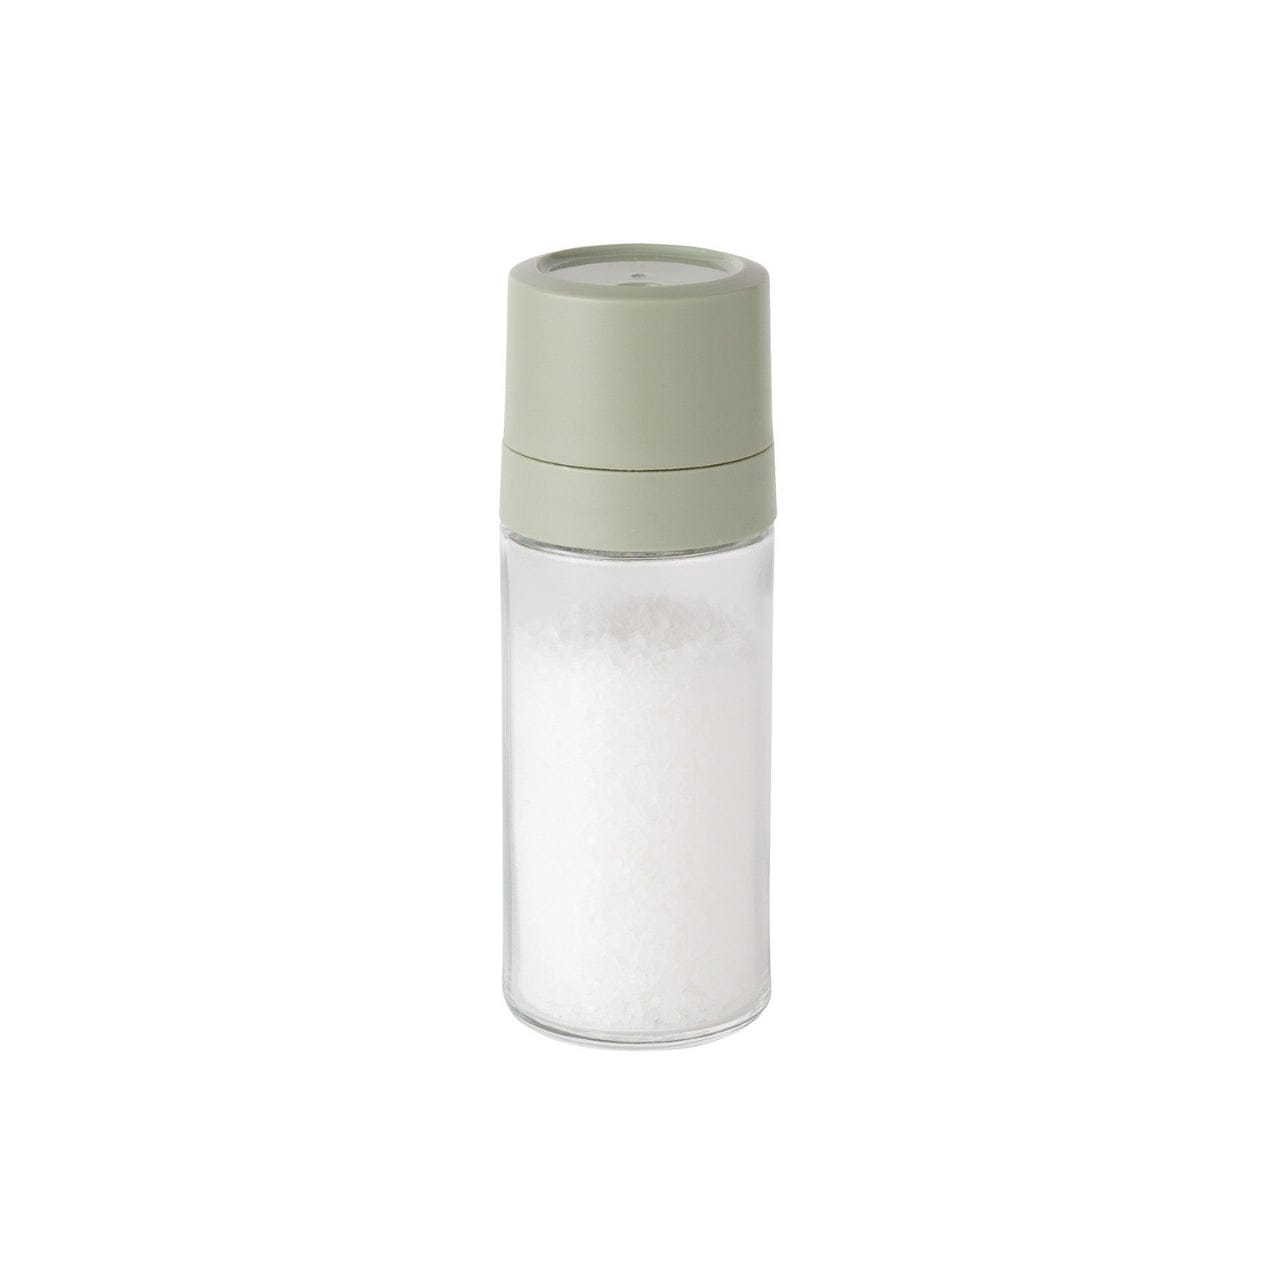 Silberthal Peper- en zoutmolen Peper- en zoutmolen - 2-delige set - Balance | Leo